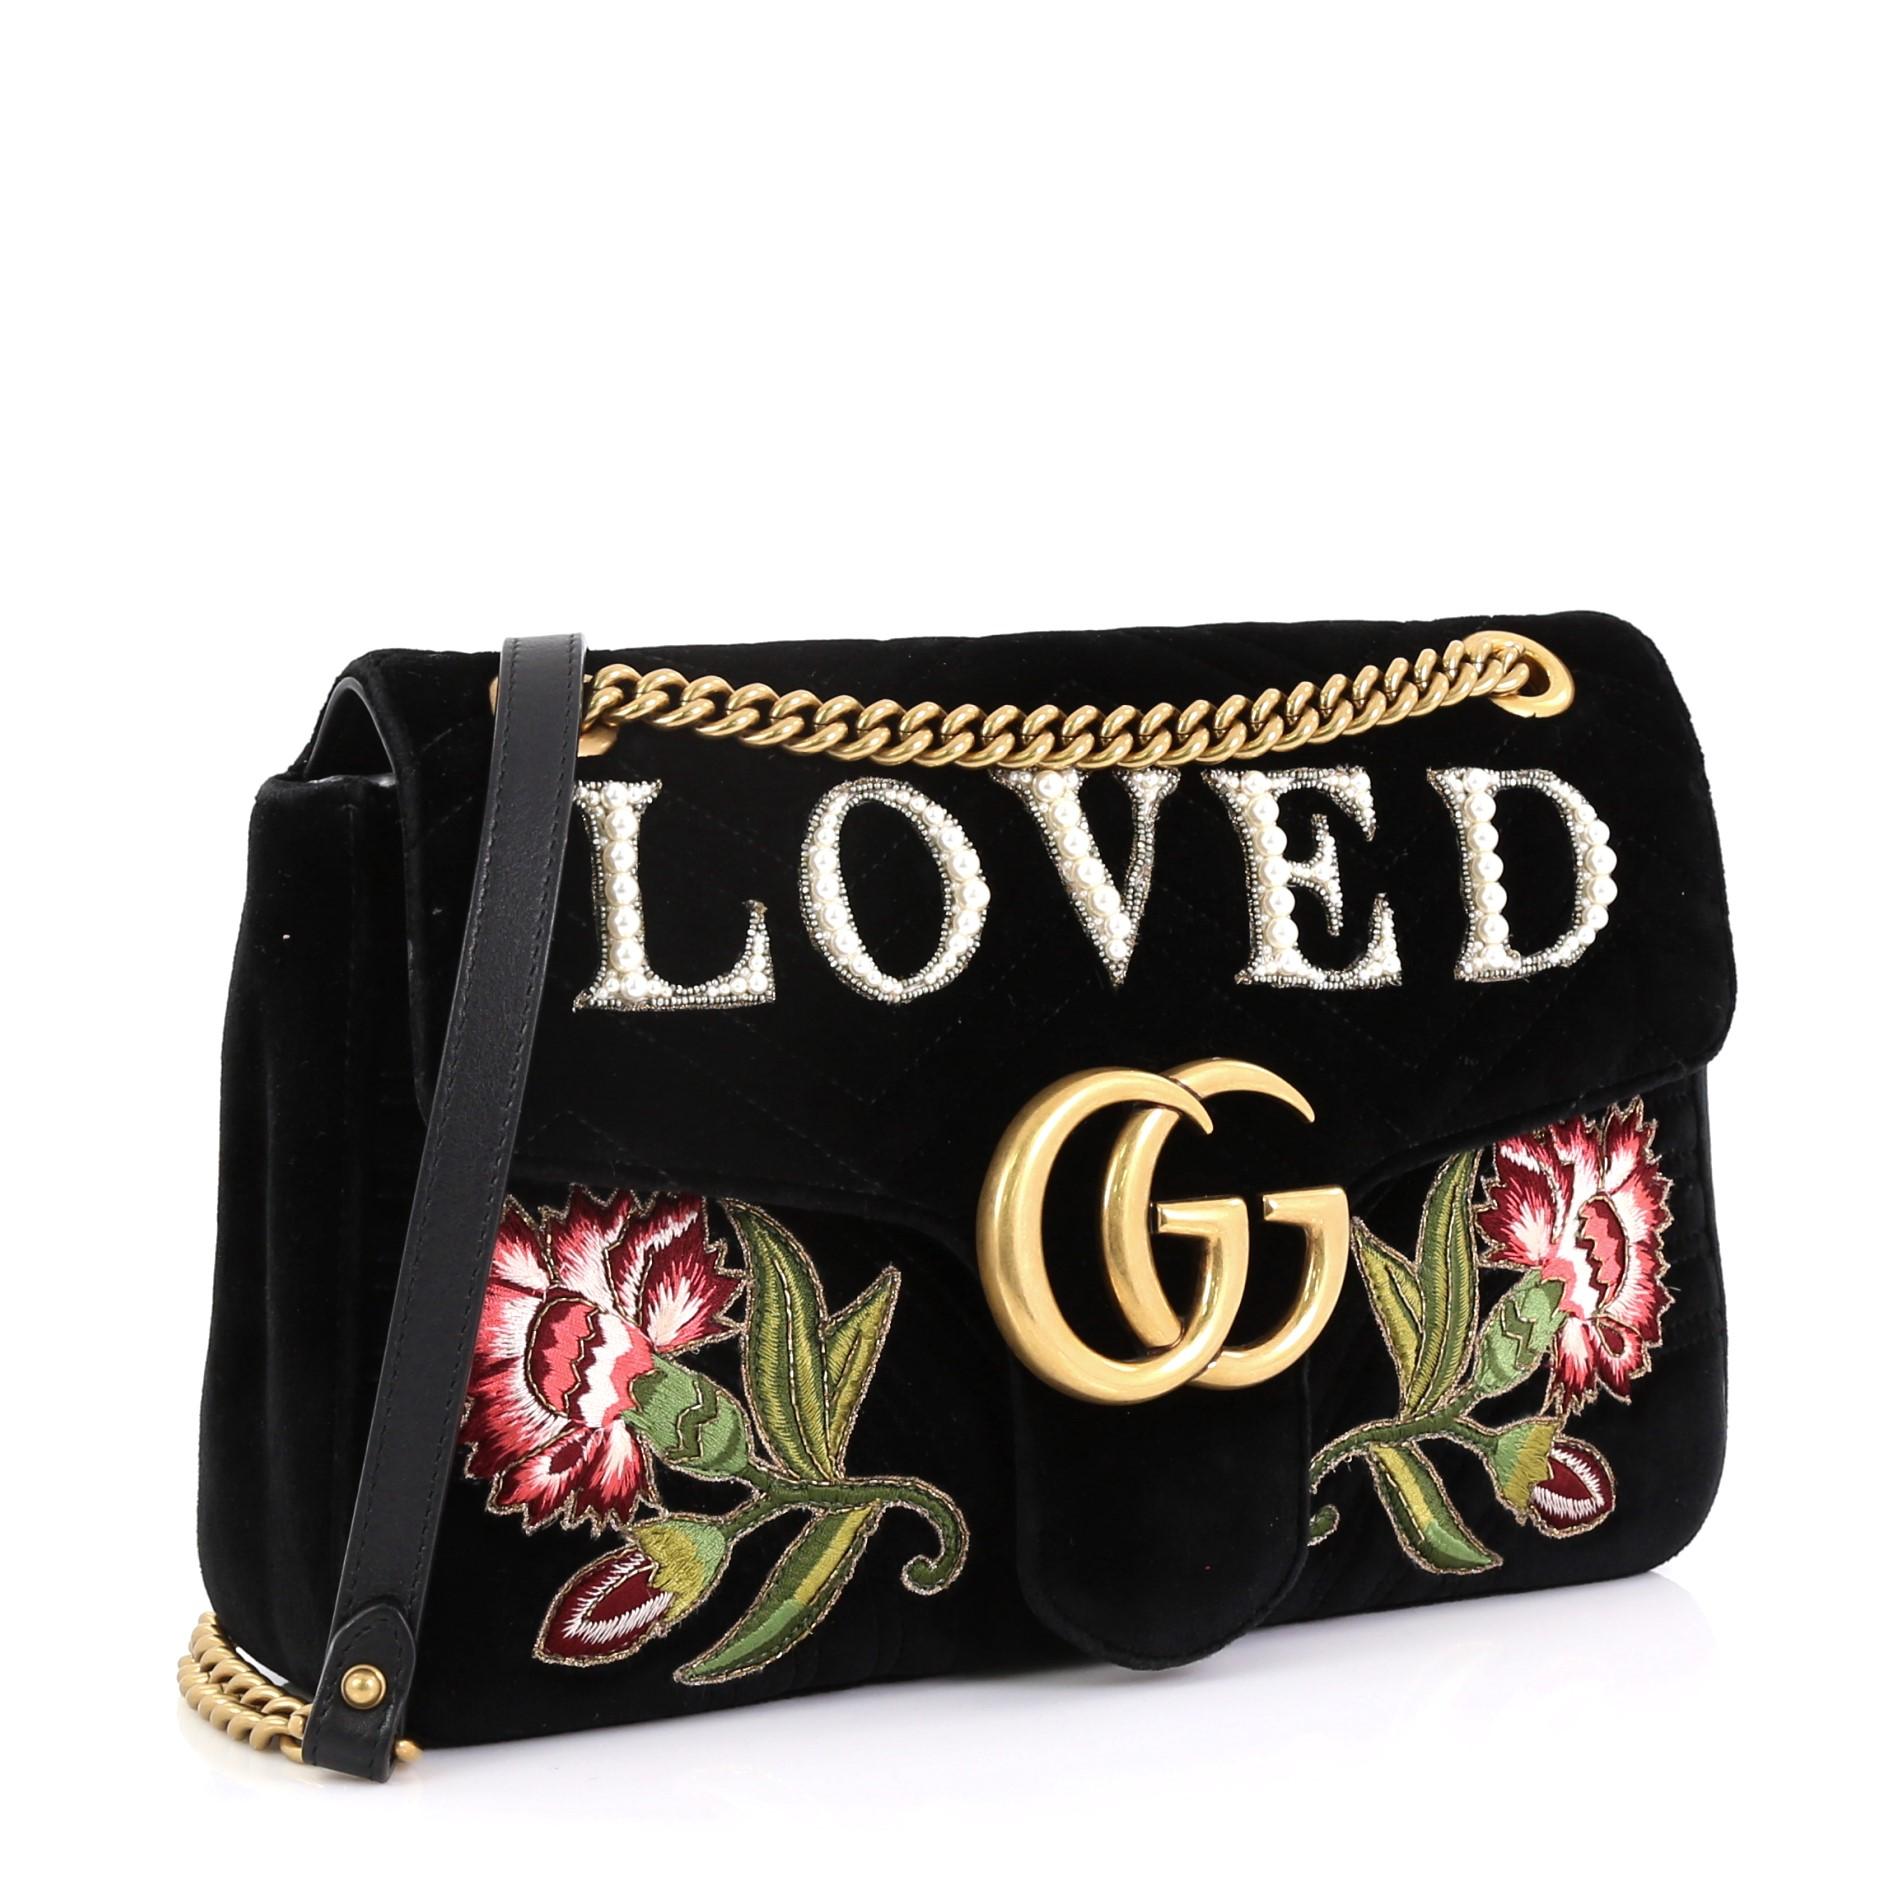 Die Gucci GG Marmont Flap Bag Embroidered Matelasse Velvet Medium aus schwarzem Matelassesamt verfügt über einen Schulterriemen mit Kettengliedern und Lederpad, aufgestickte Blumen und Swarovski-Perlen, die das Wort Loved